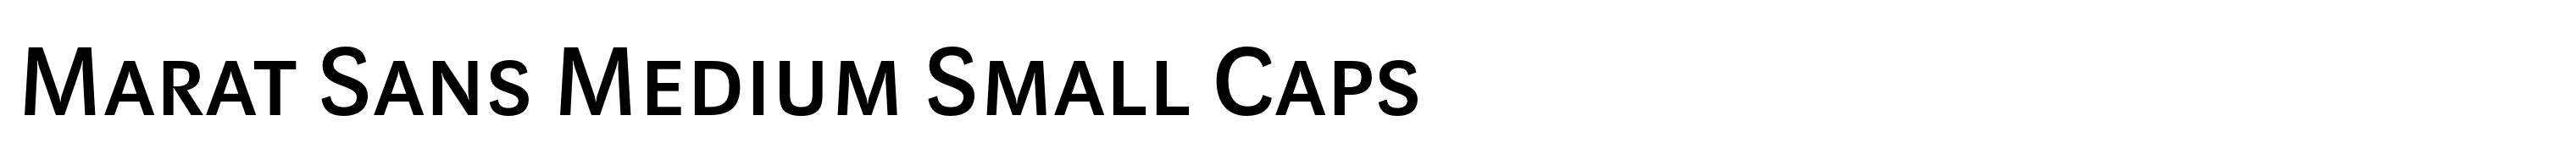 Marat Sans Medium Small Caps